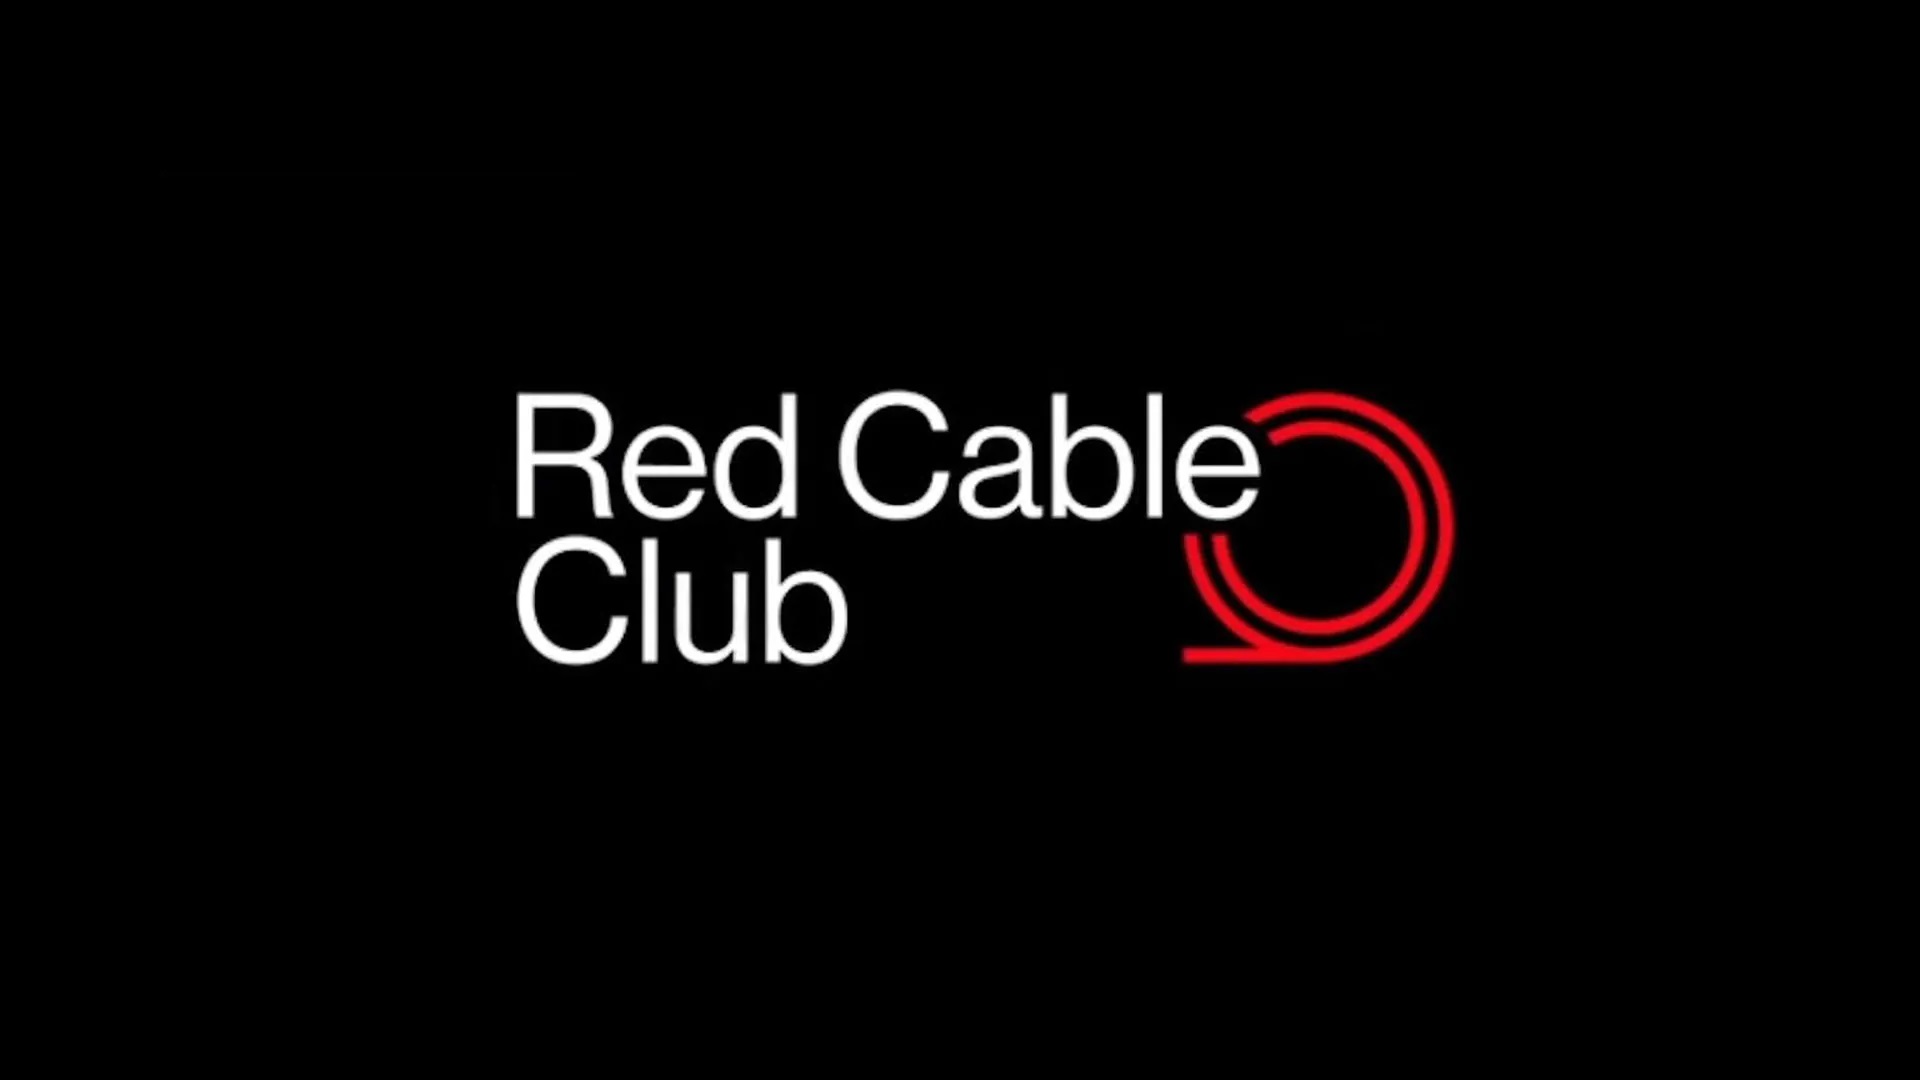 OnePlus lanza Red Cable Club en Europa con hasta un 50% de descuento y envío gratuito